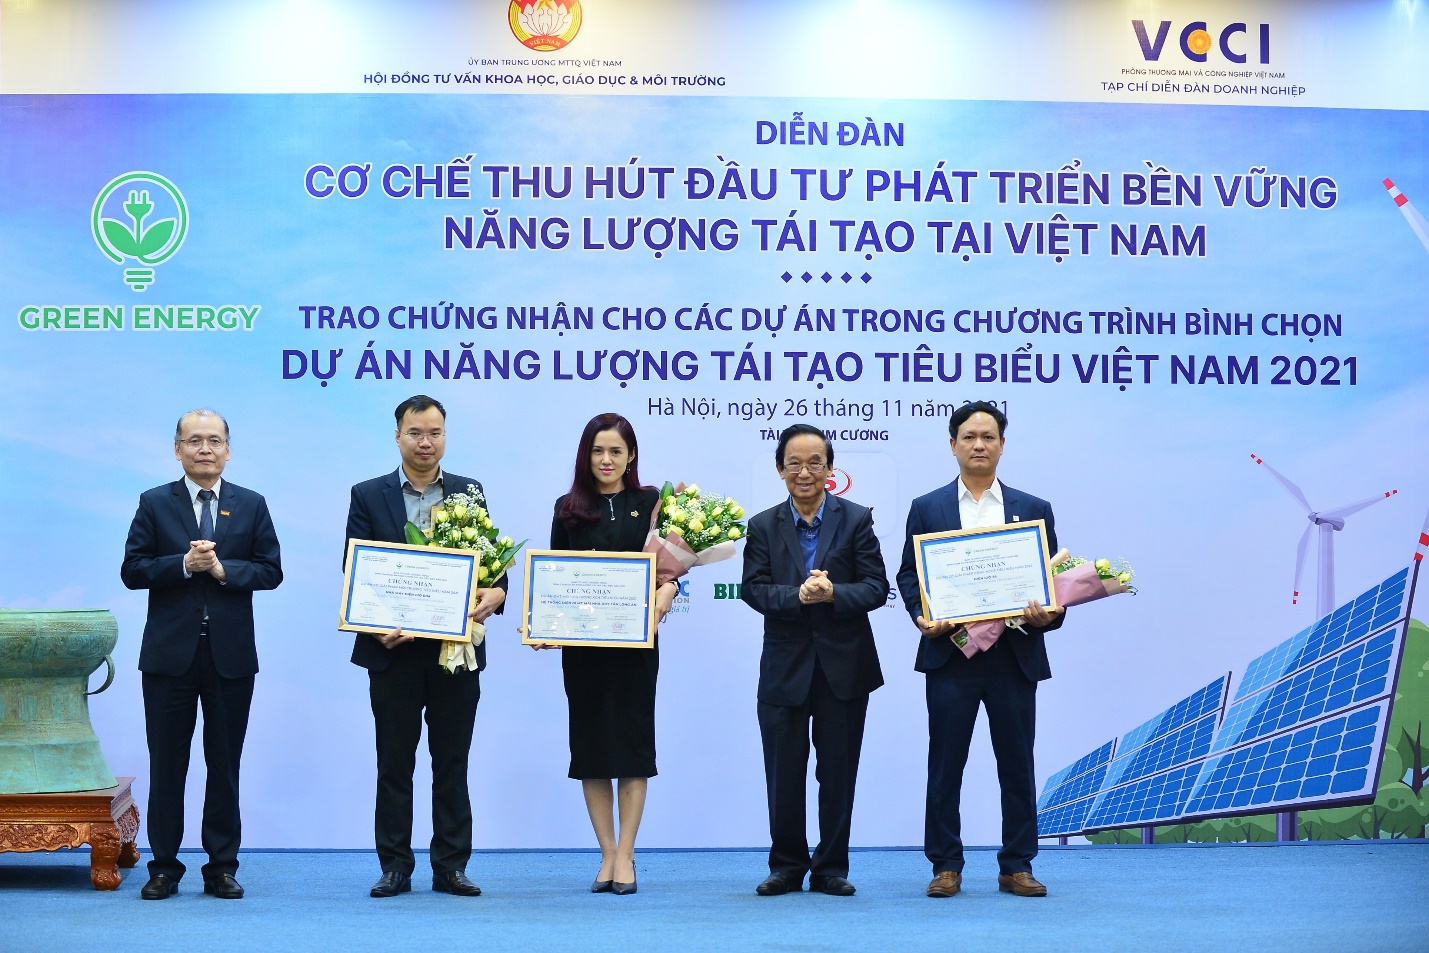 Ông Nguyễn Hải Vinh, Phó Tổng giám đốc Công ty CP Năng lượng Tái tạo BIM, nhận chứng nhận Dự án Năng lượng tái tạo tiêu biểu Việt Nam 2021 cho 2 nhà máy điện mặt trời BIM 2, BIM 3.